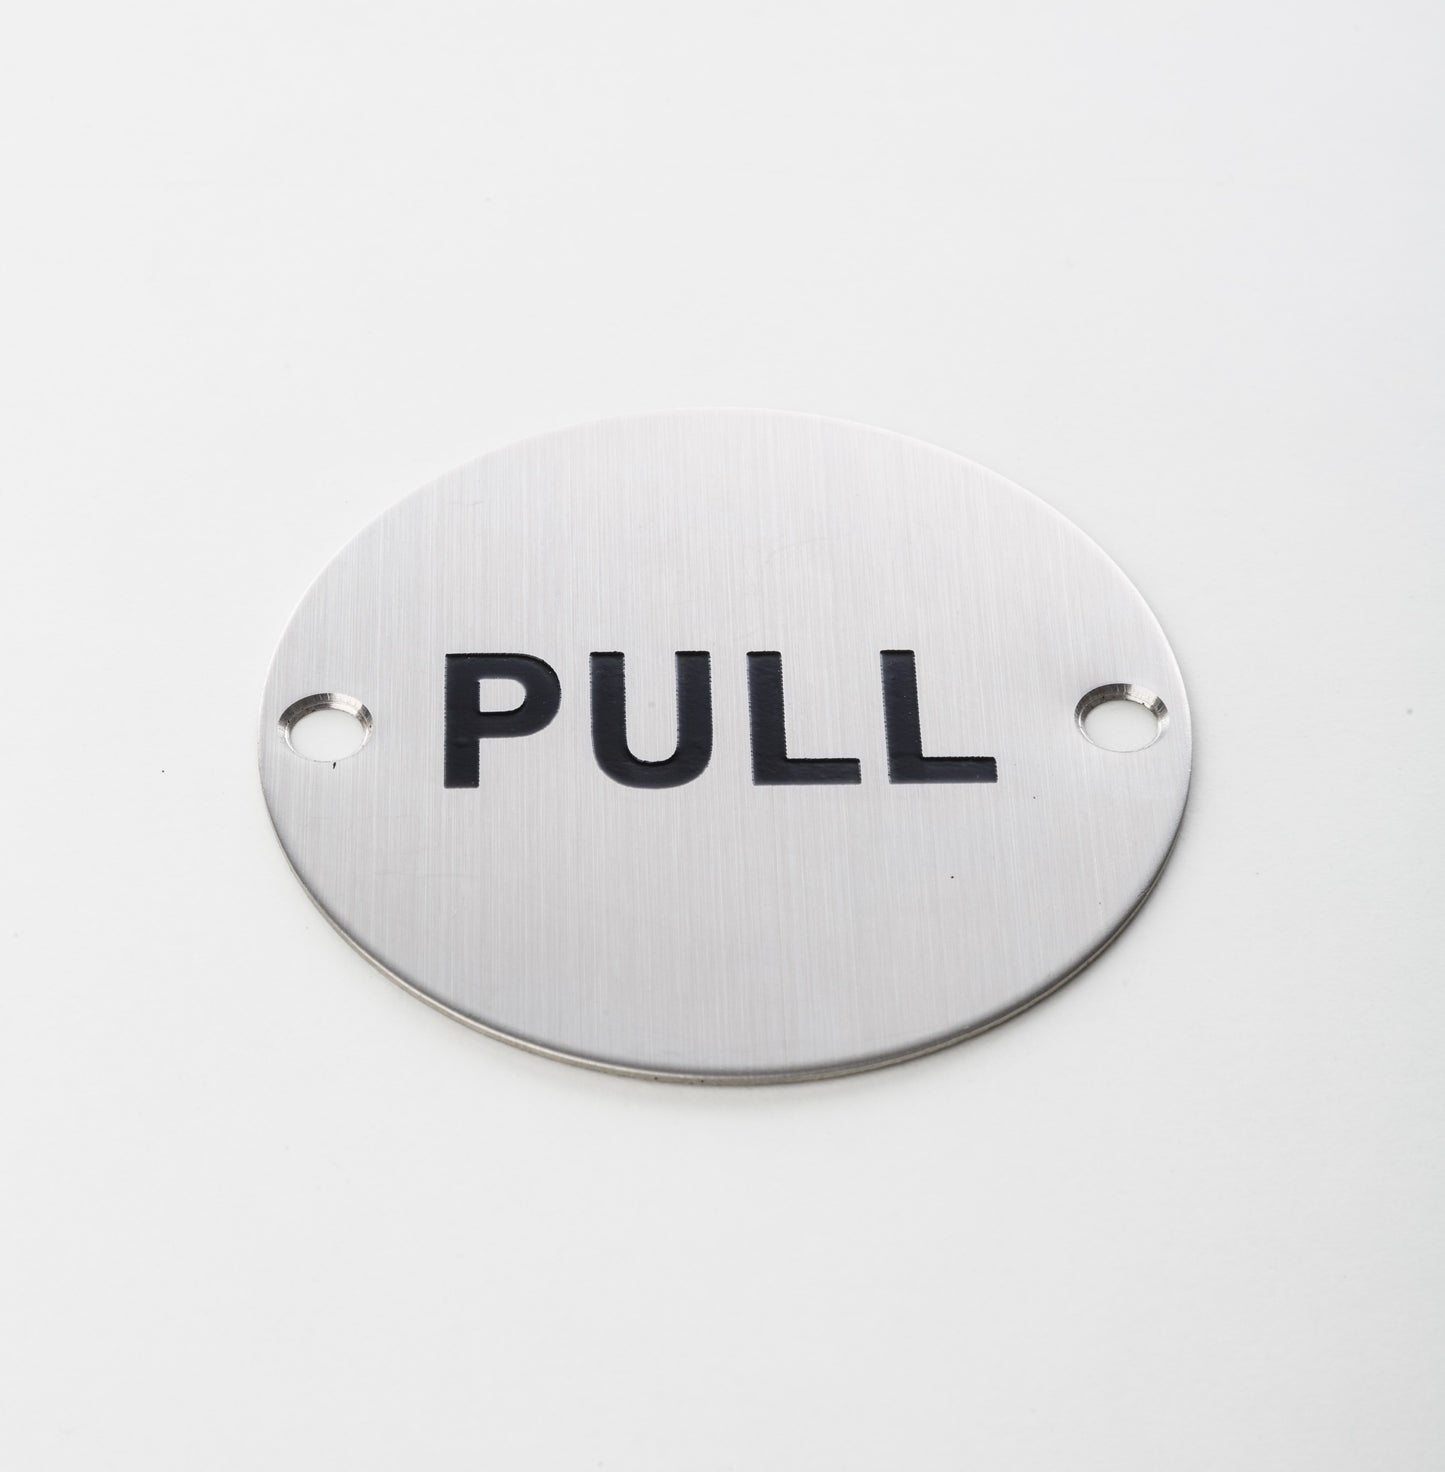 Pull Door Sign - CH361